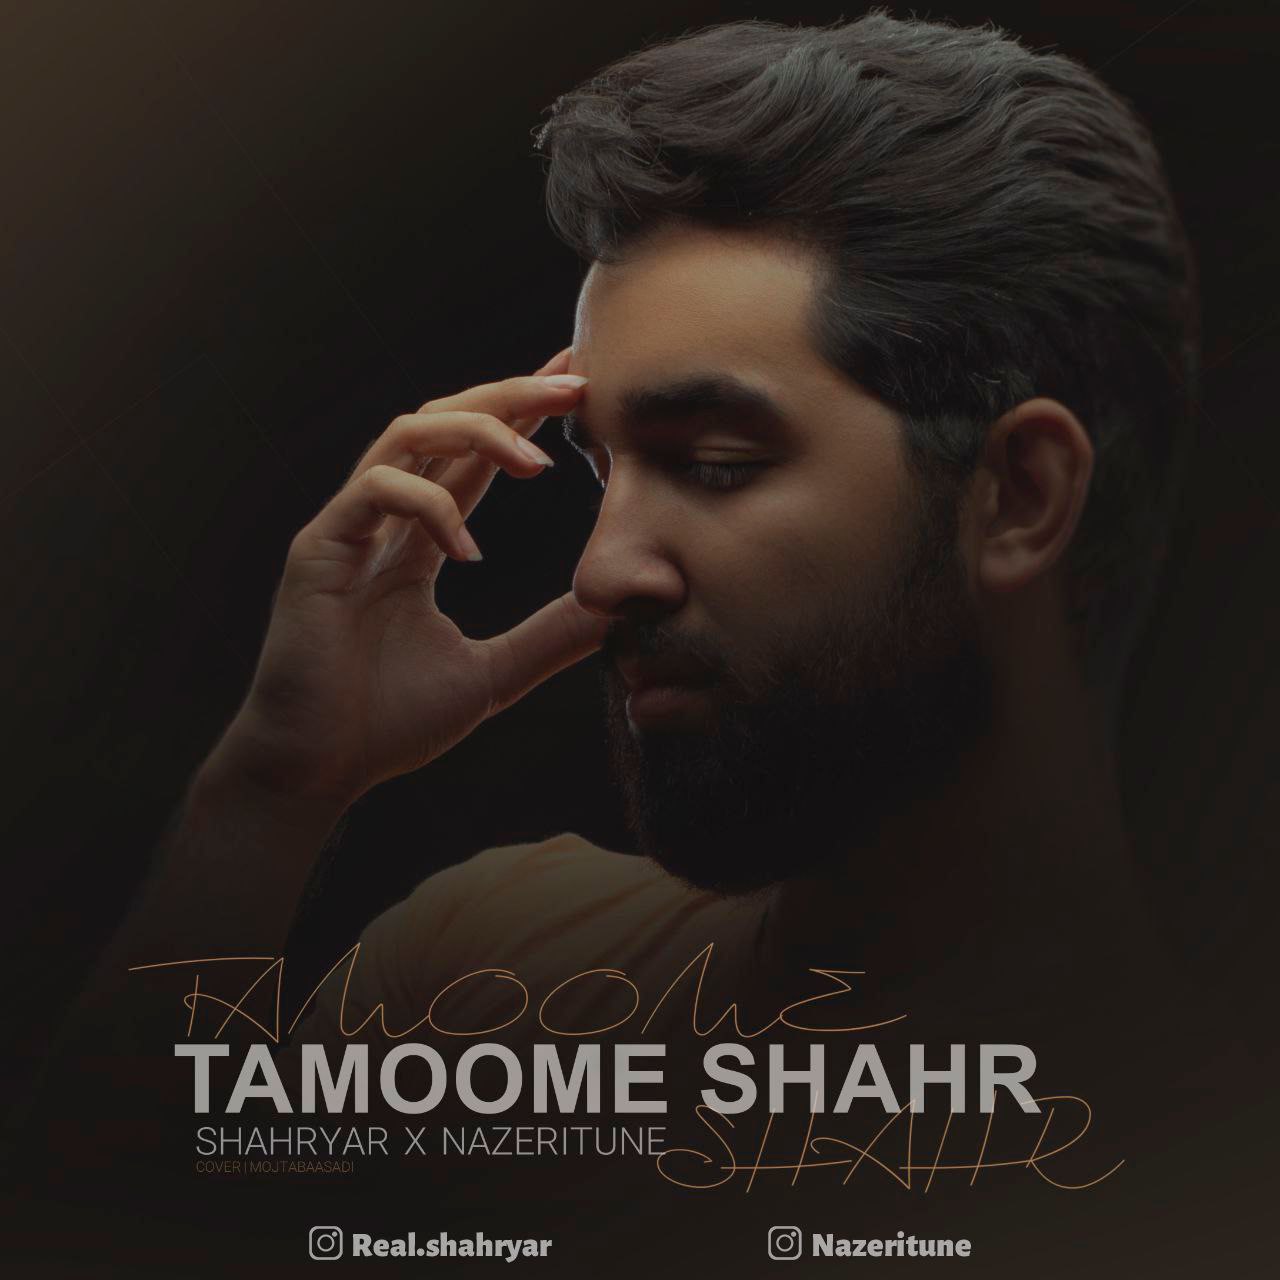 Shahryar – Tamoome Shahr